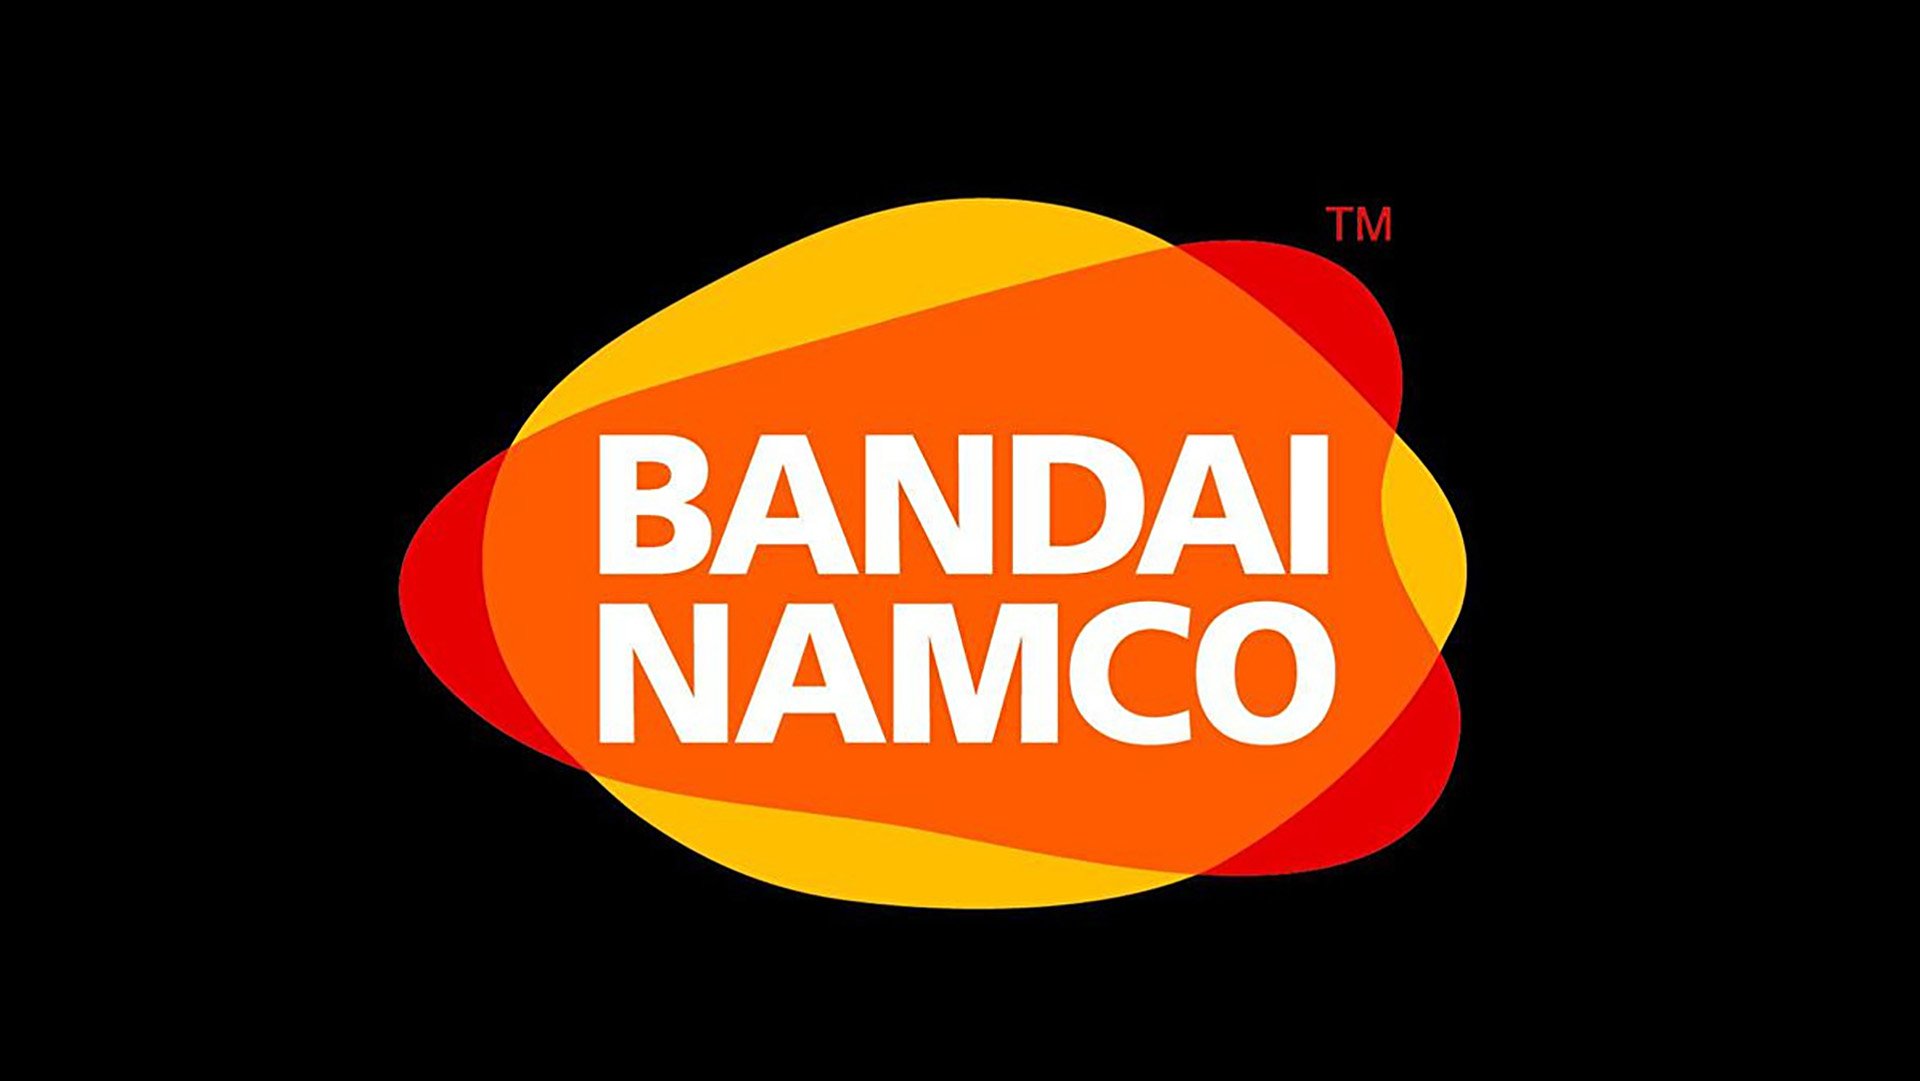 Bandai Namco บริจาค 100 ล้านเยนให้องค์กรการกุศลเพื่อสนับสนุนยูเครน